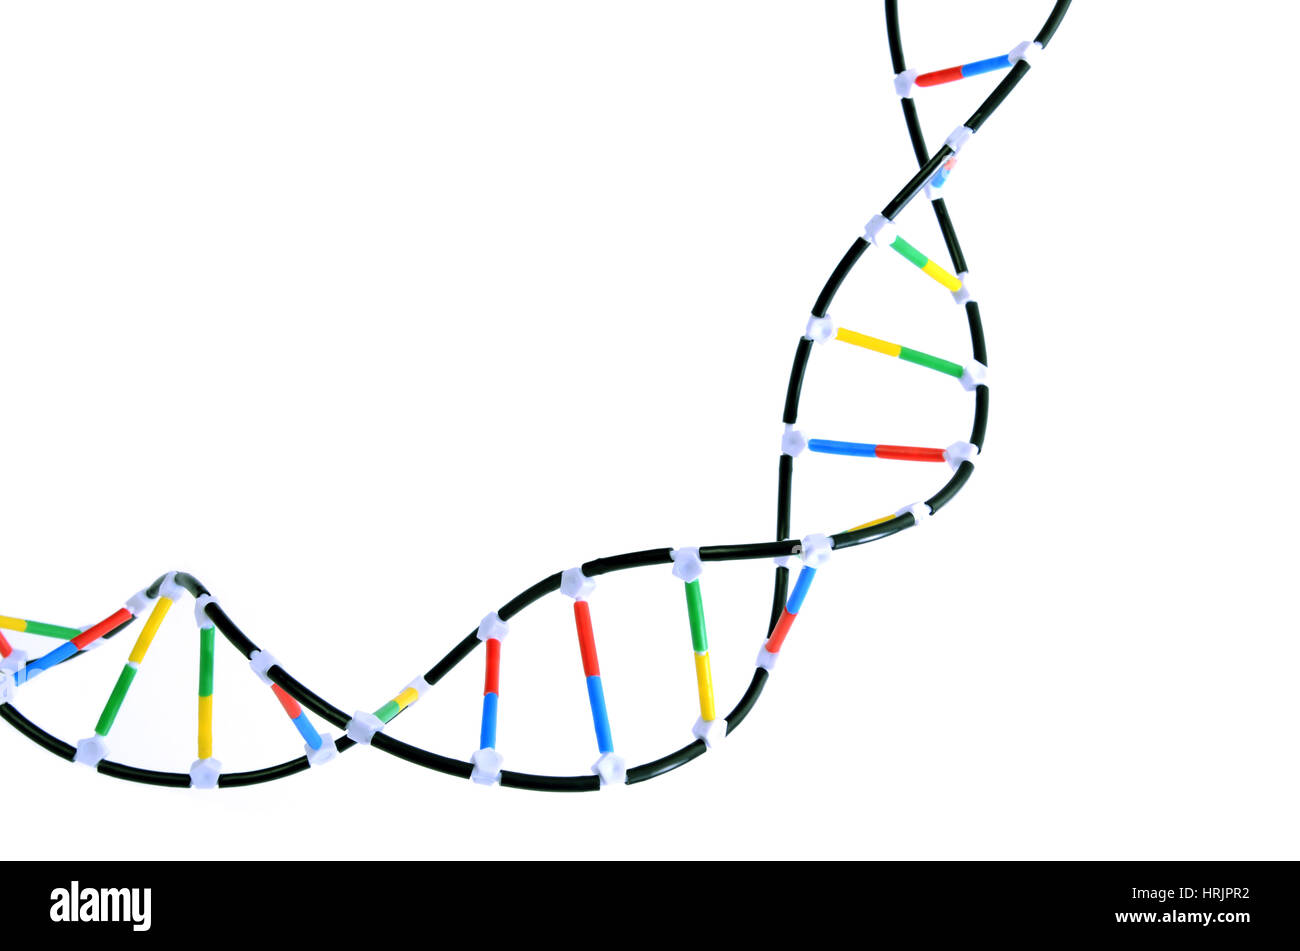 Double Helix DNA Model Stock Photo - Alamy